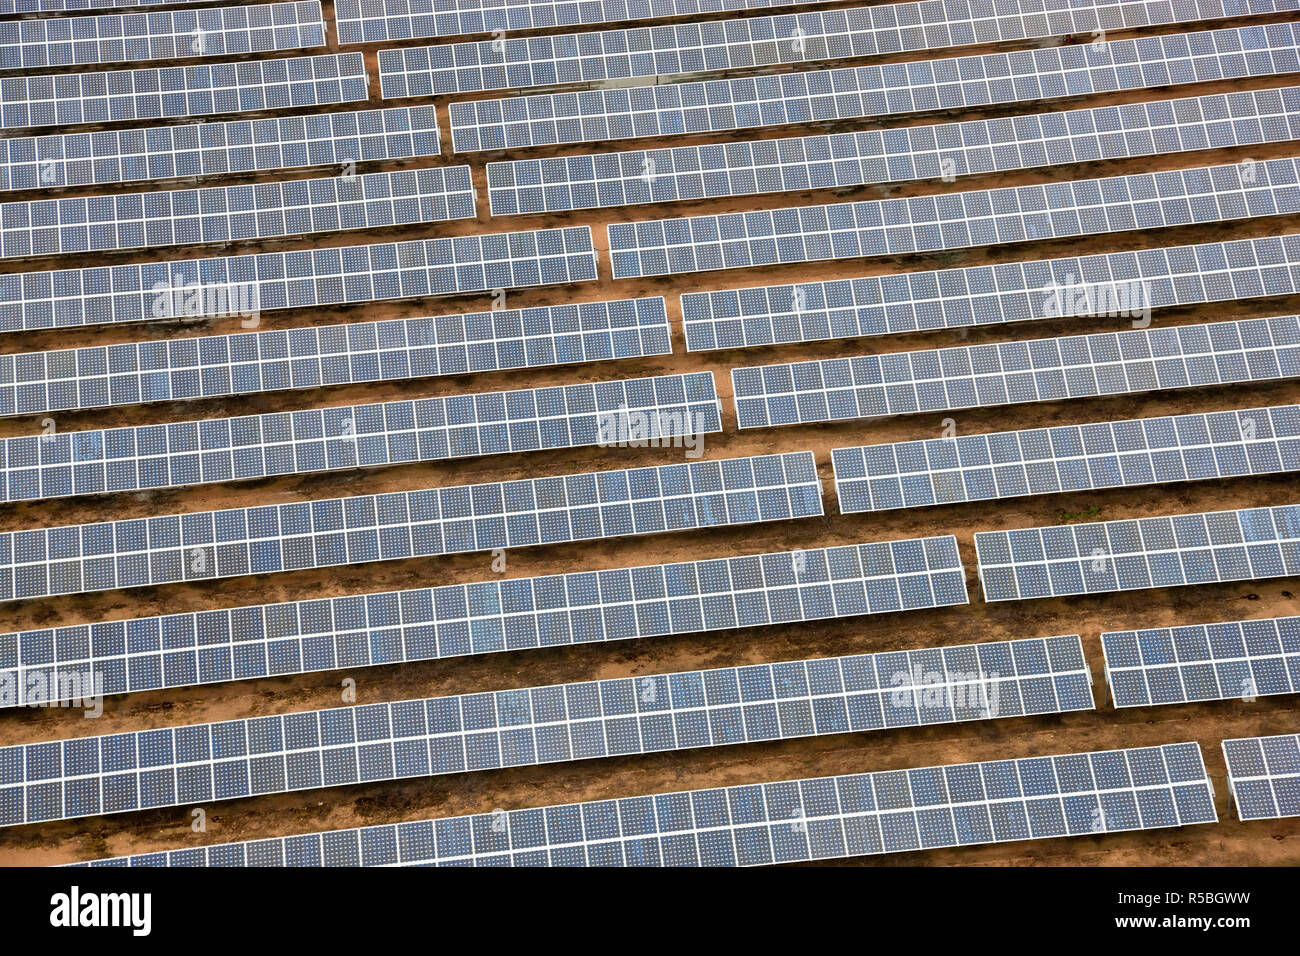 Vue aérienne de panneaux solaires la Province de Huelva, Espagne Banque D'Images